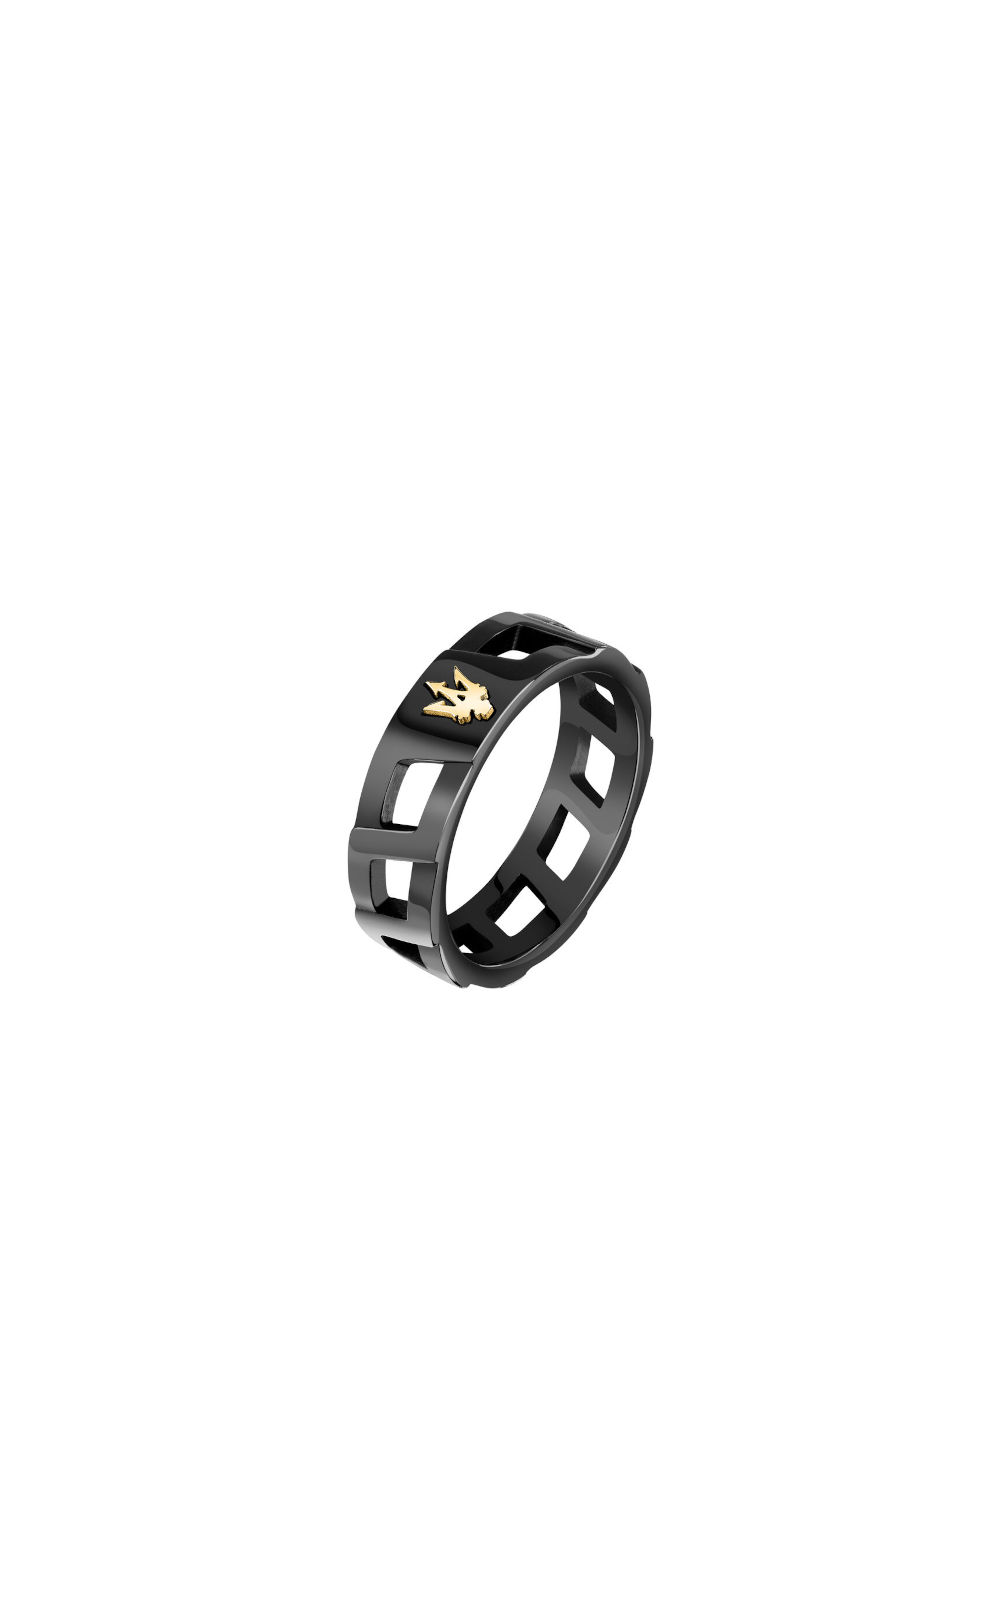 MASERATI RING JM334AVD510-No.25 Μαύρο Ανδρικό Δαχτυλίδι Με Χρυσή Τρίαινα